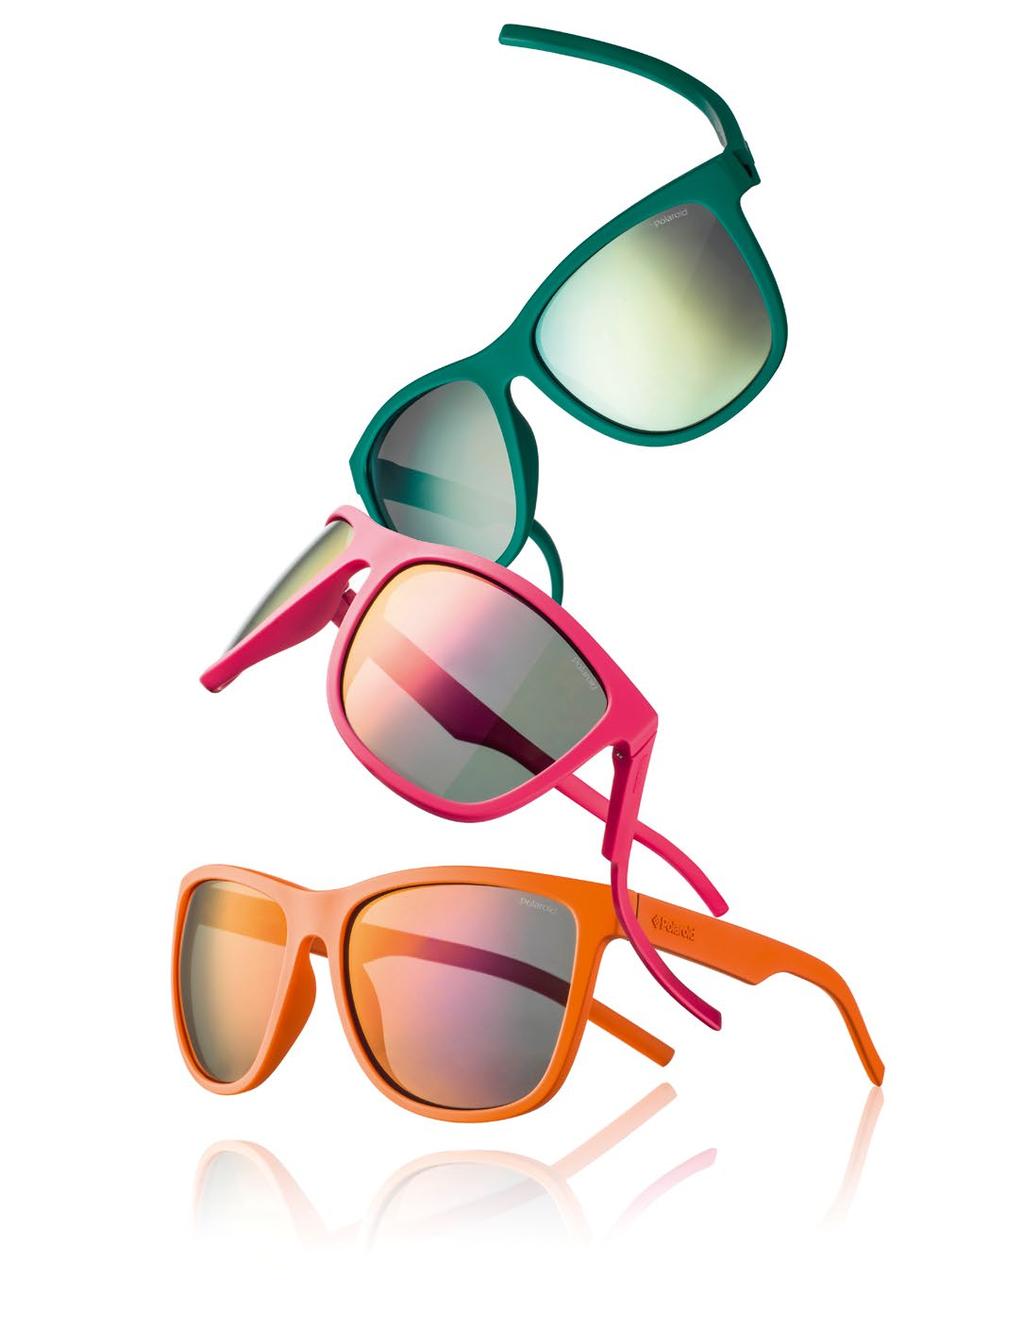 42 Sonnenbrillen-Trends Foto links: Der richtige Dreh für diesen Sommer!